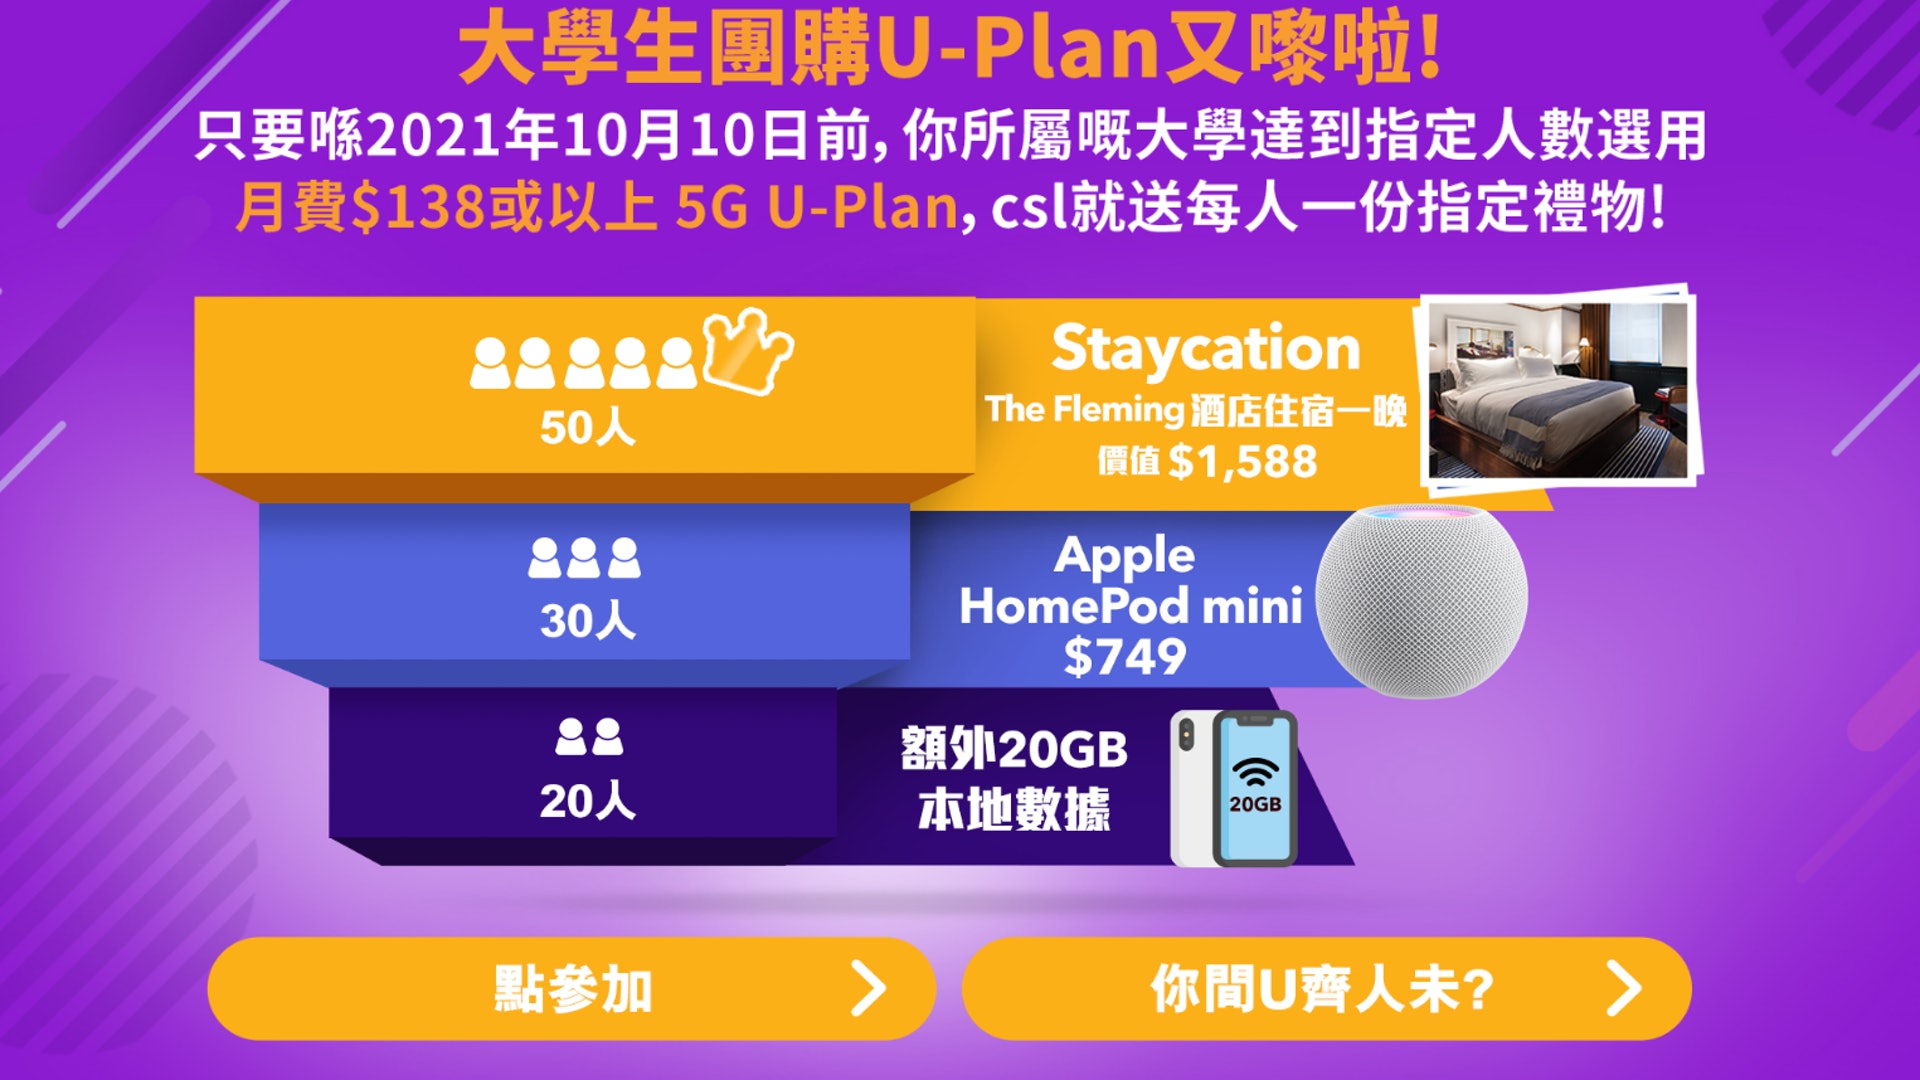 csl.大專生5G U-plan(csl.網頁截圖)